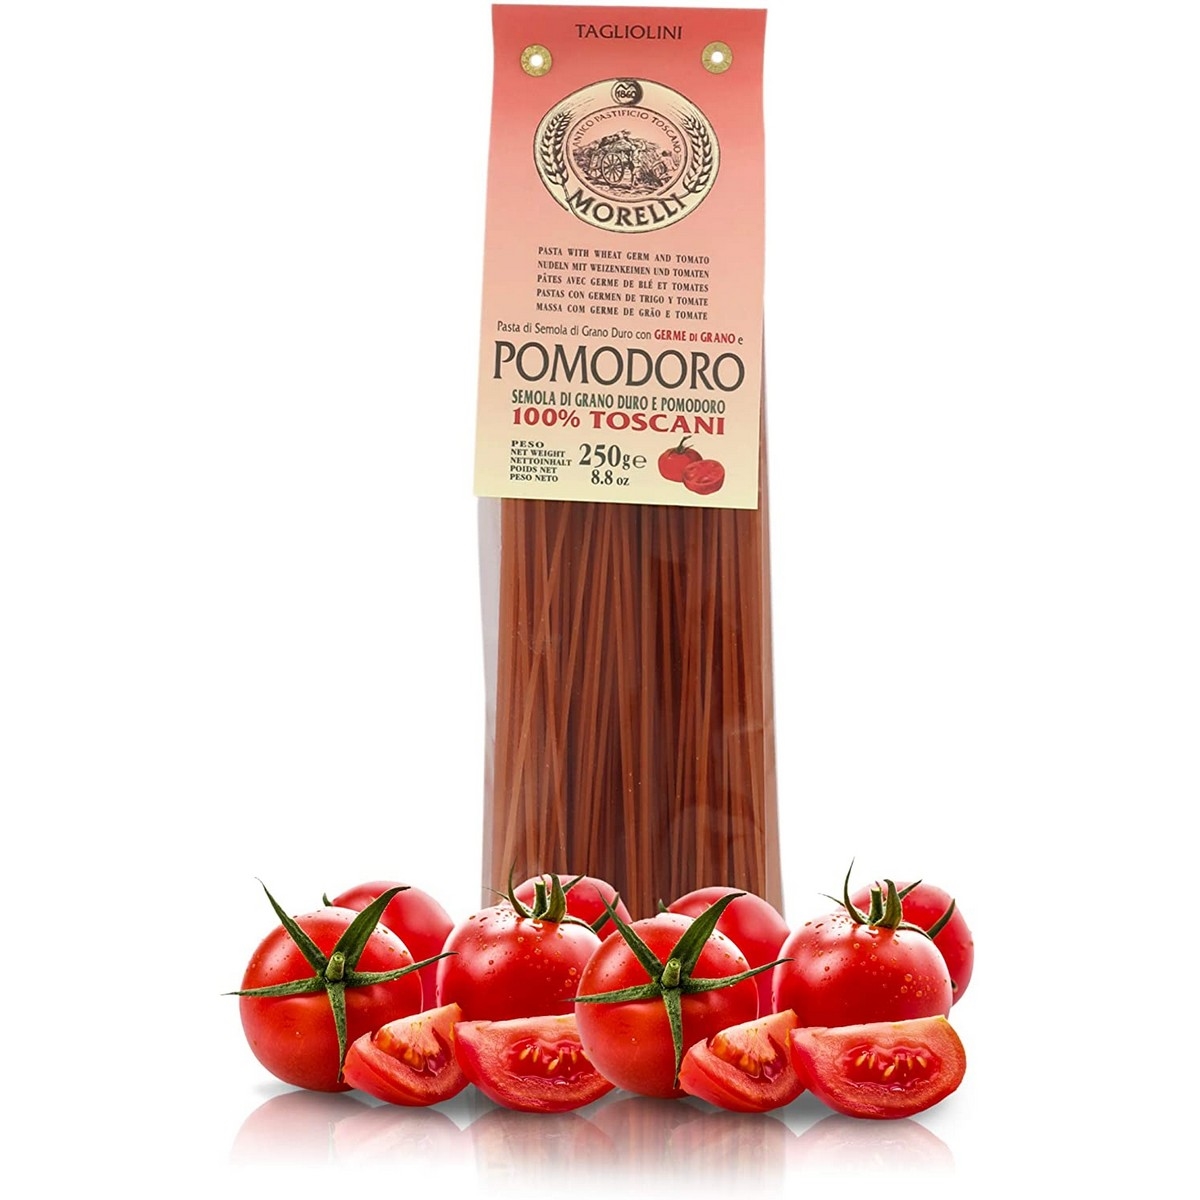 Antico pastorio morelli - pasta con sabor - tomate - tagliolini - 250 g